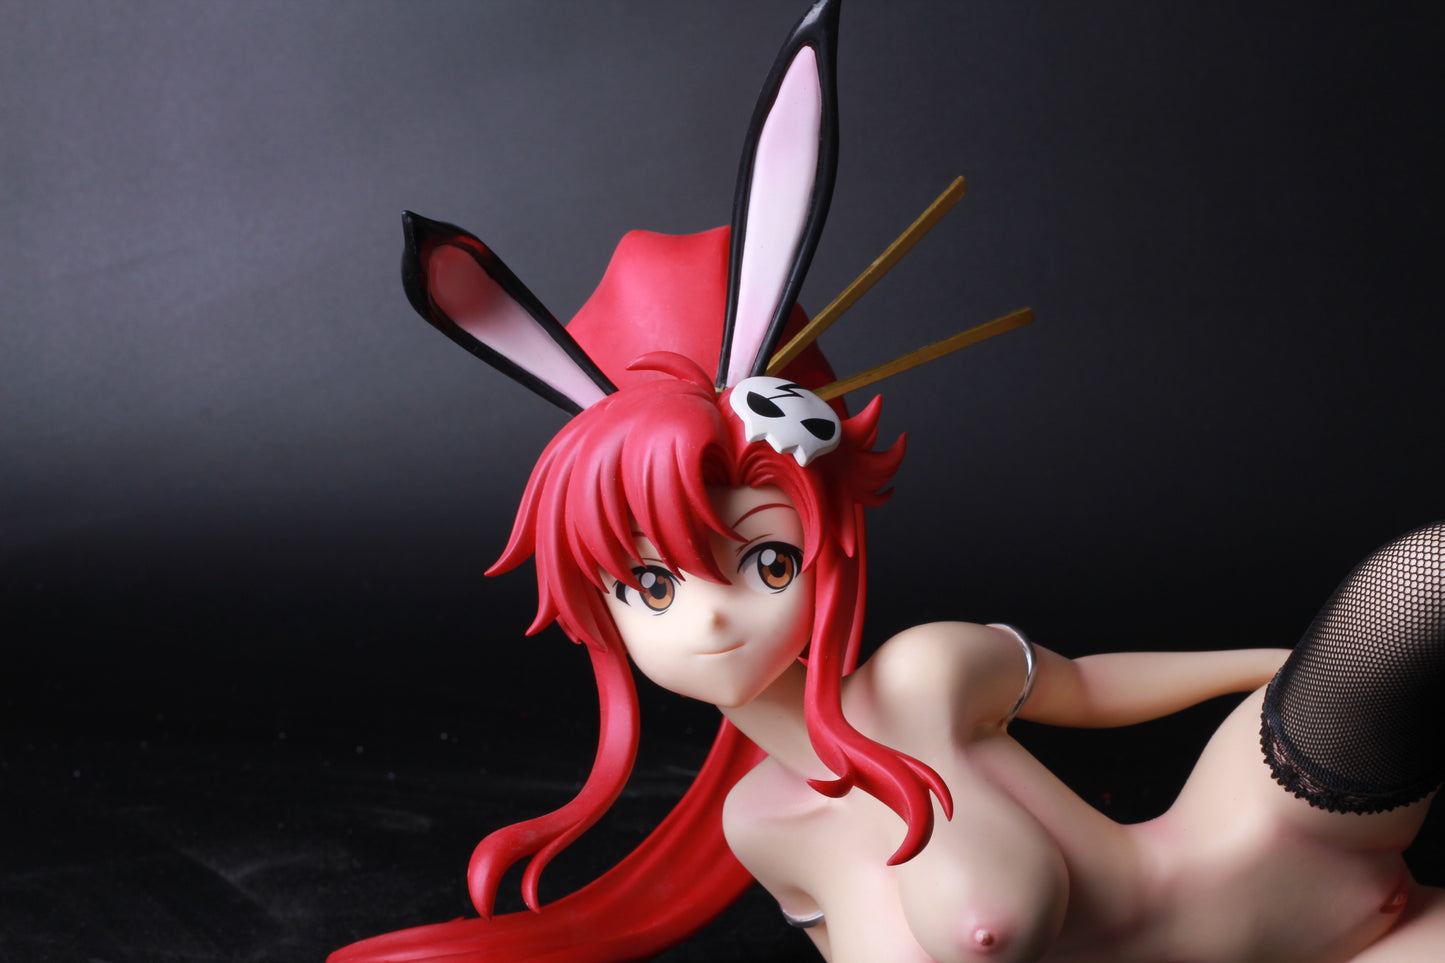 Tengen Toppa Gurren Lagann yoko 1/4 naked anime figures resin model figures